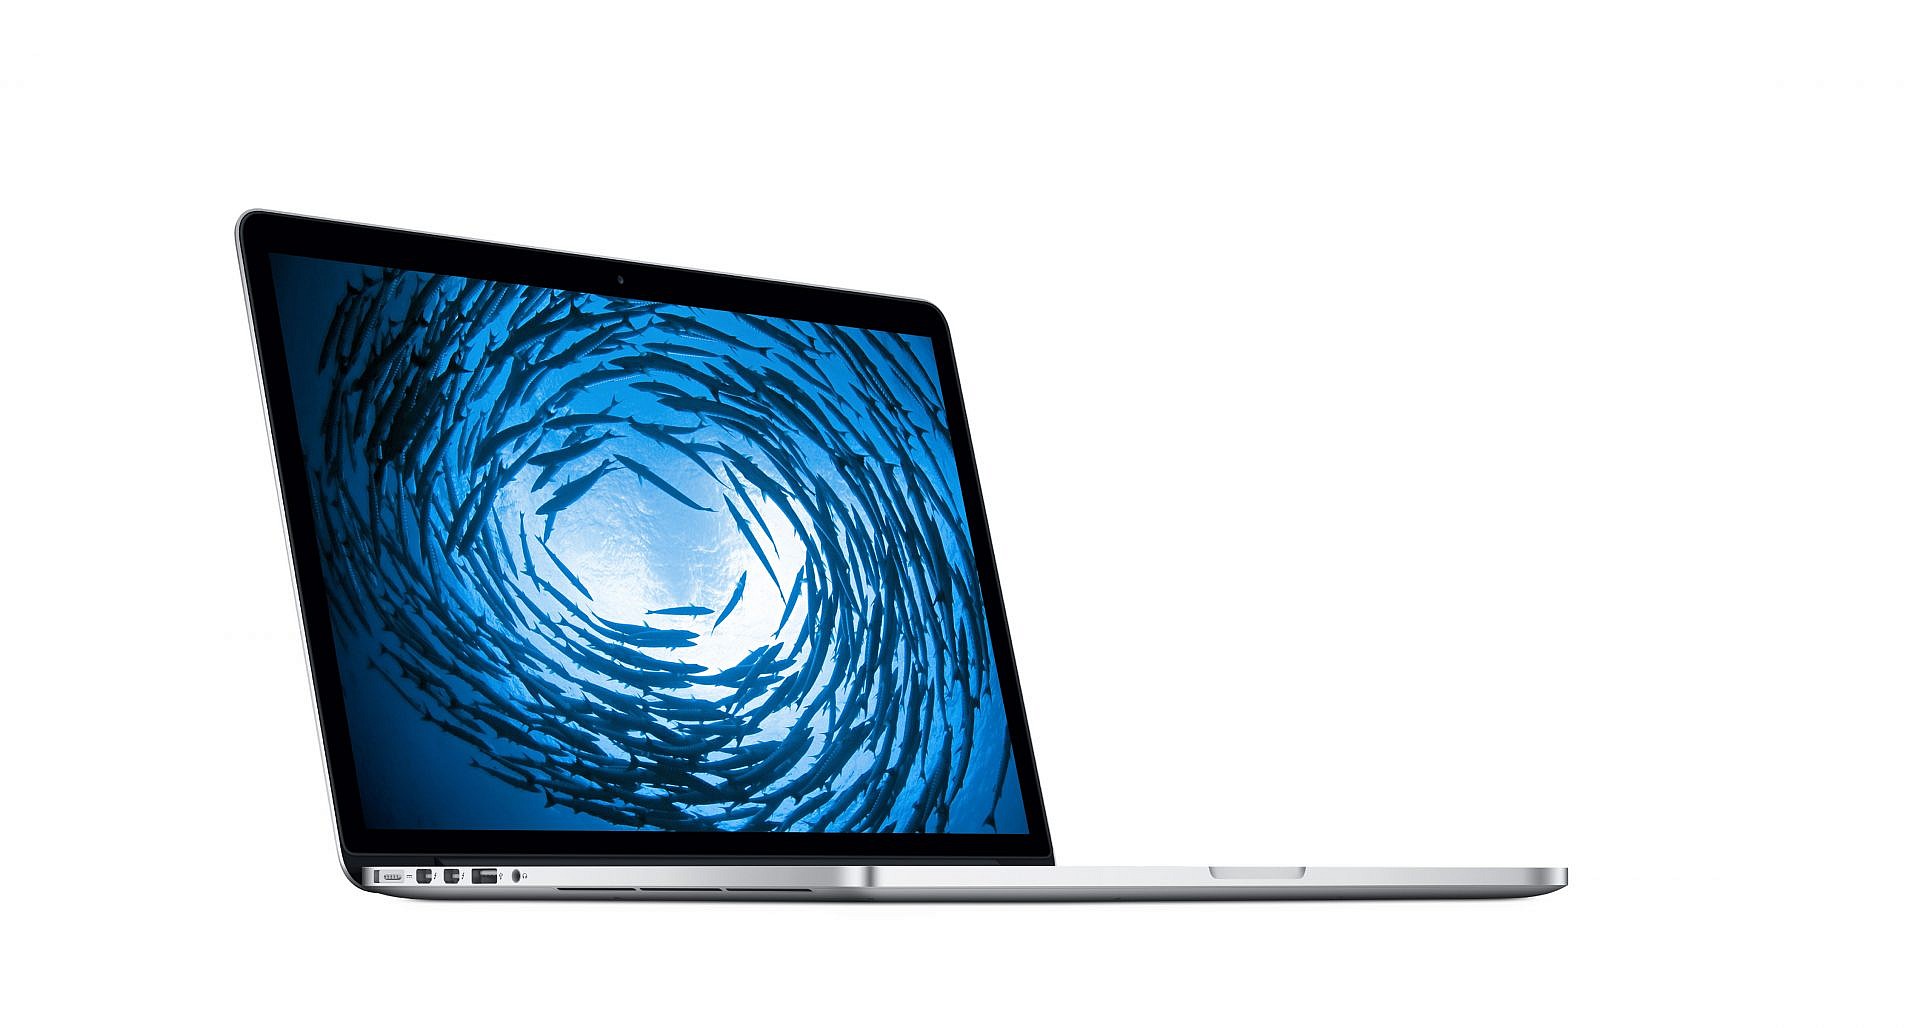 ของใหม่มา ของเก่ายังอยู่ Apple ยังคงขาย MacBook Pro Retina 2015 เหมือนเดิม